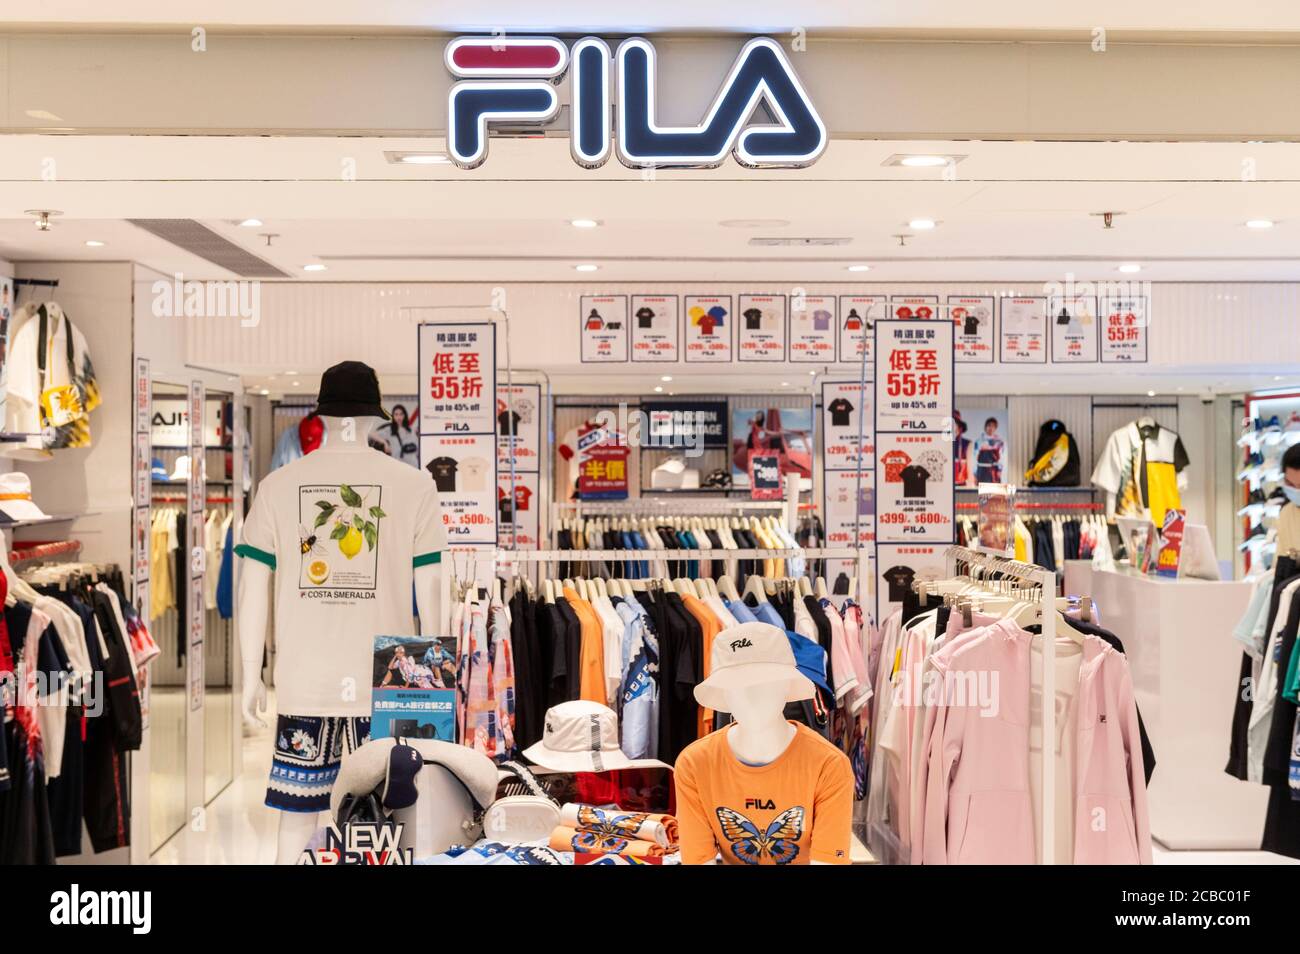 Marque de sport italien Fila store vu à Hong Kong Photo Stock - Alamy